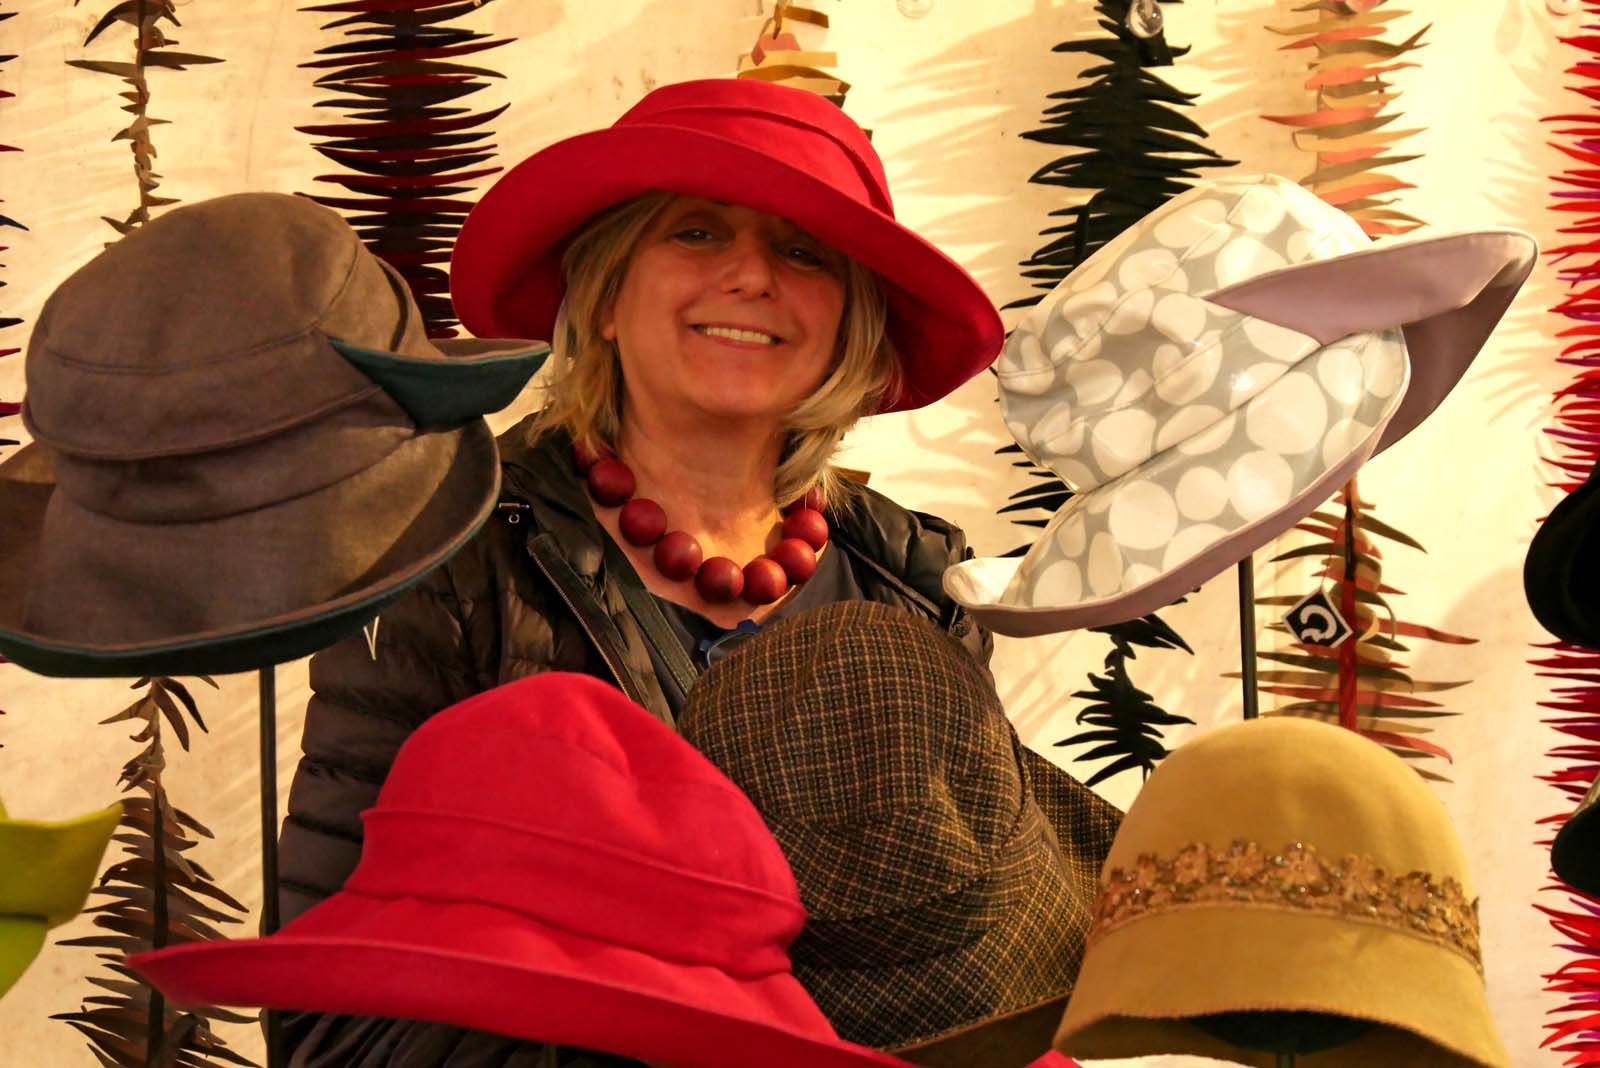 Angelika Klose inmitten ihrer Hüte, die sie kreiert hat - zwischen braun-dunkelgrünem Hut, das wie für die Jagd geeignet scheint, Regencape (weiße Kreise auf hellgrauem Grund und rosafarben auf der Rückseite bzw. Innenseite), rot, 20er Jahre-schick und Sherlock-Holmes-Imitat, lächelt sie zufrieden ins Publikum - im Hintergrund hängen die 